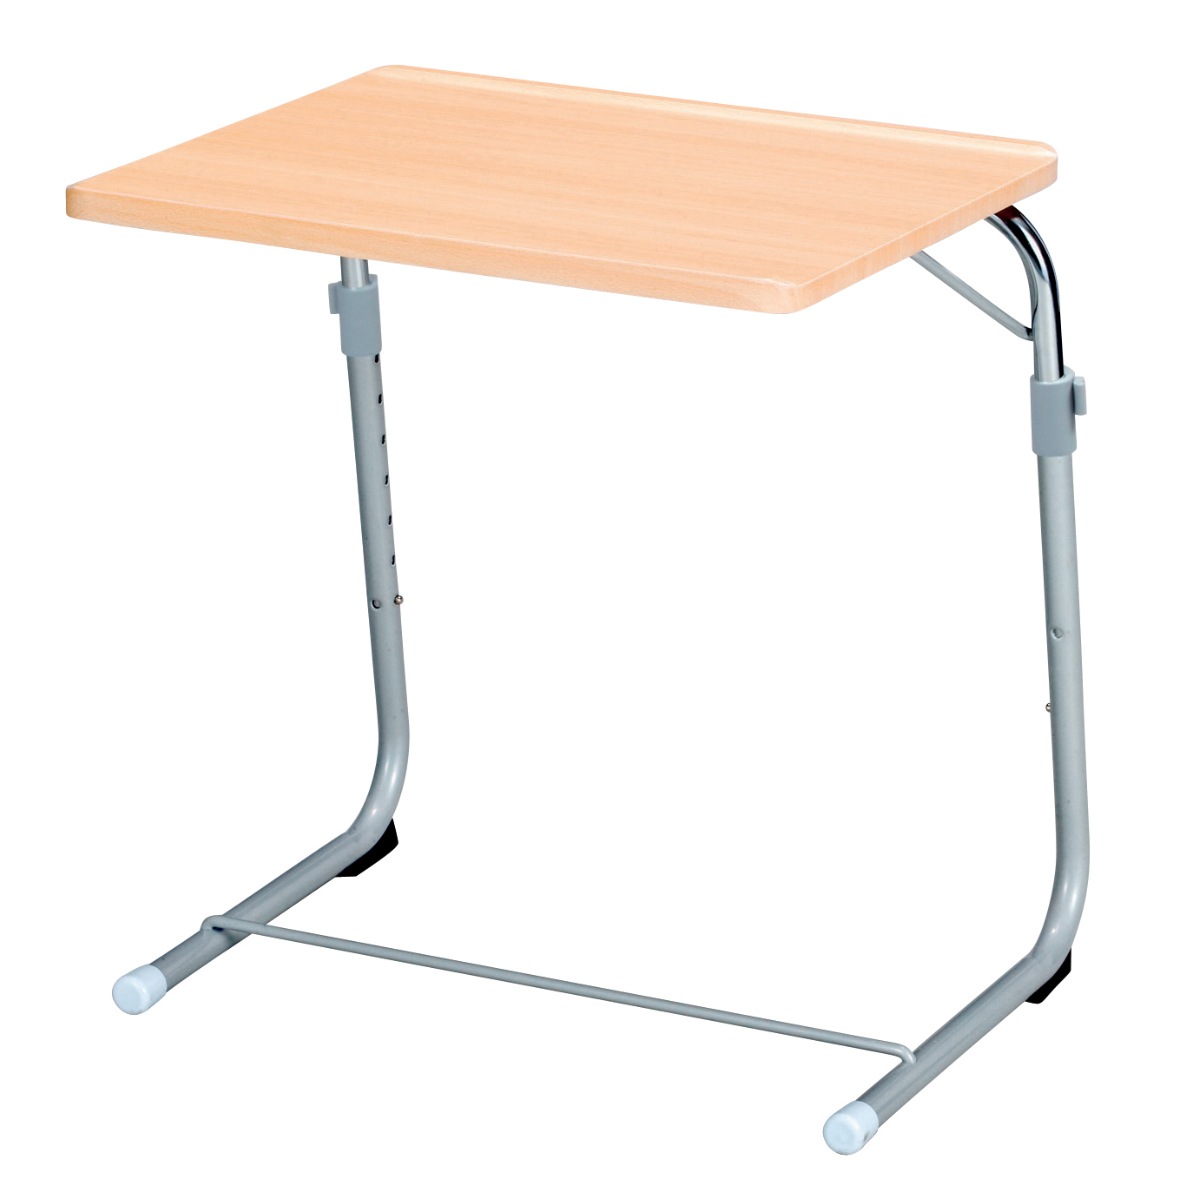 代引き人気 幅53.5cm 簡易デスク ソファーテーブル ベッドテーブル ナイトテーブル テーブル 折りたたみ ナチュラル 角度調整 高さ調整 高さ56ー87cm サイドテーブル 昇降式 コの字 木目調 サイドテーブル